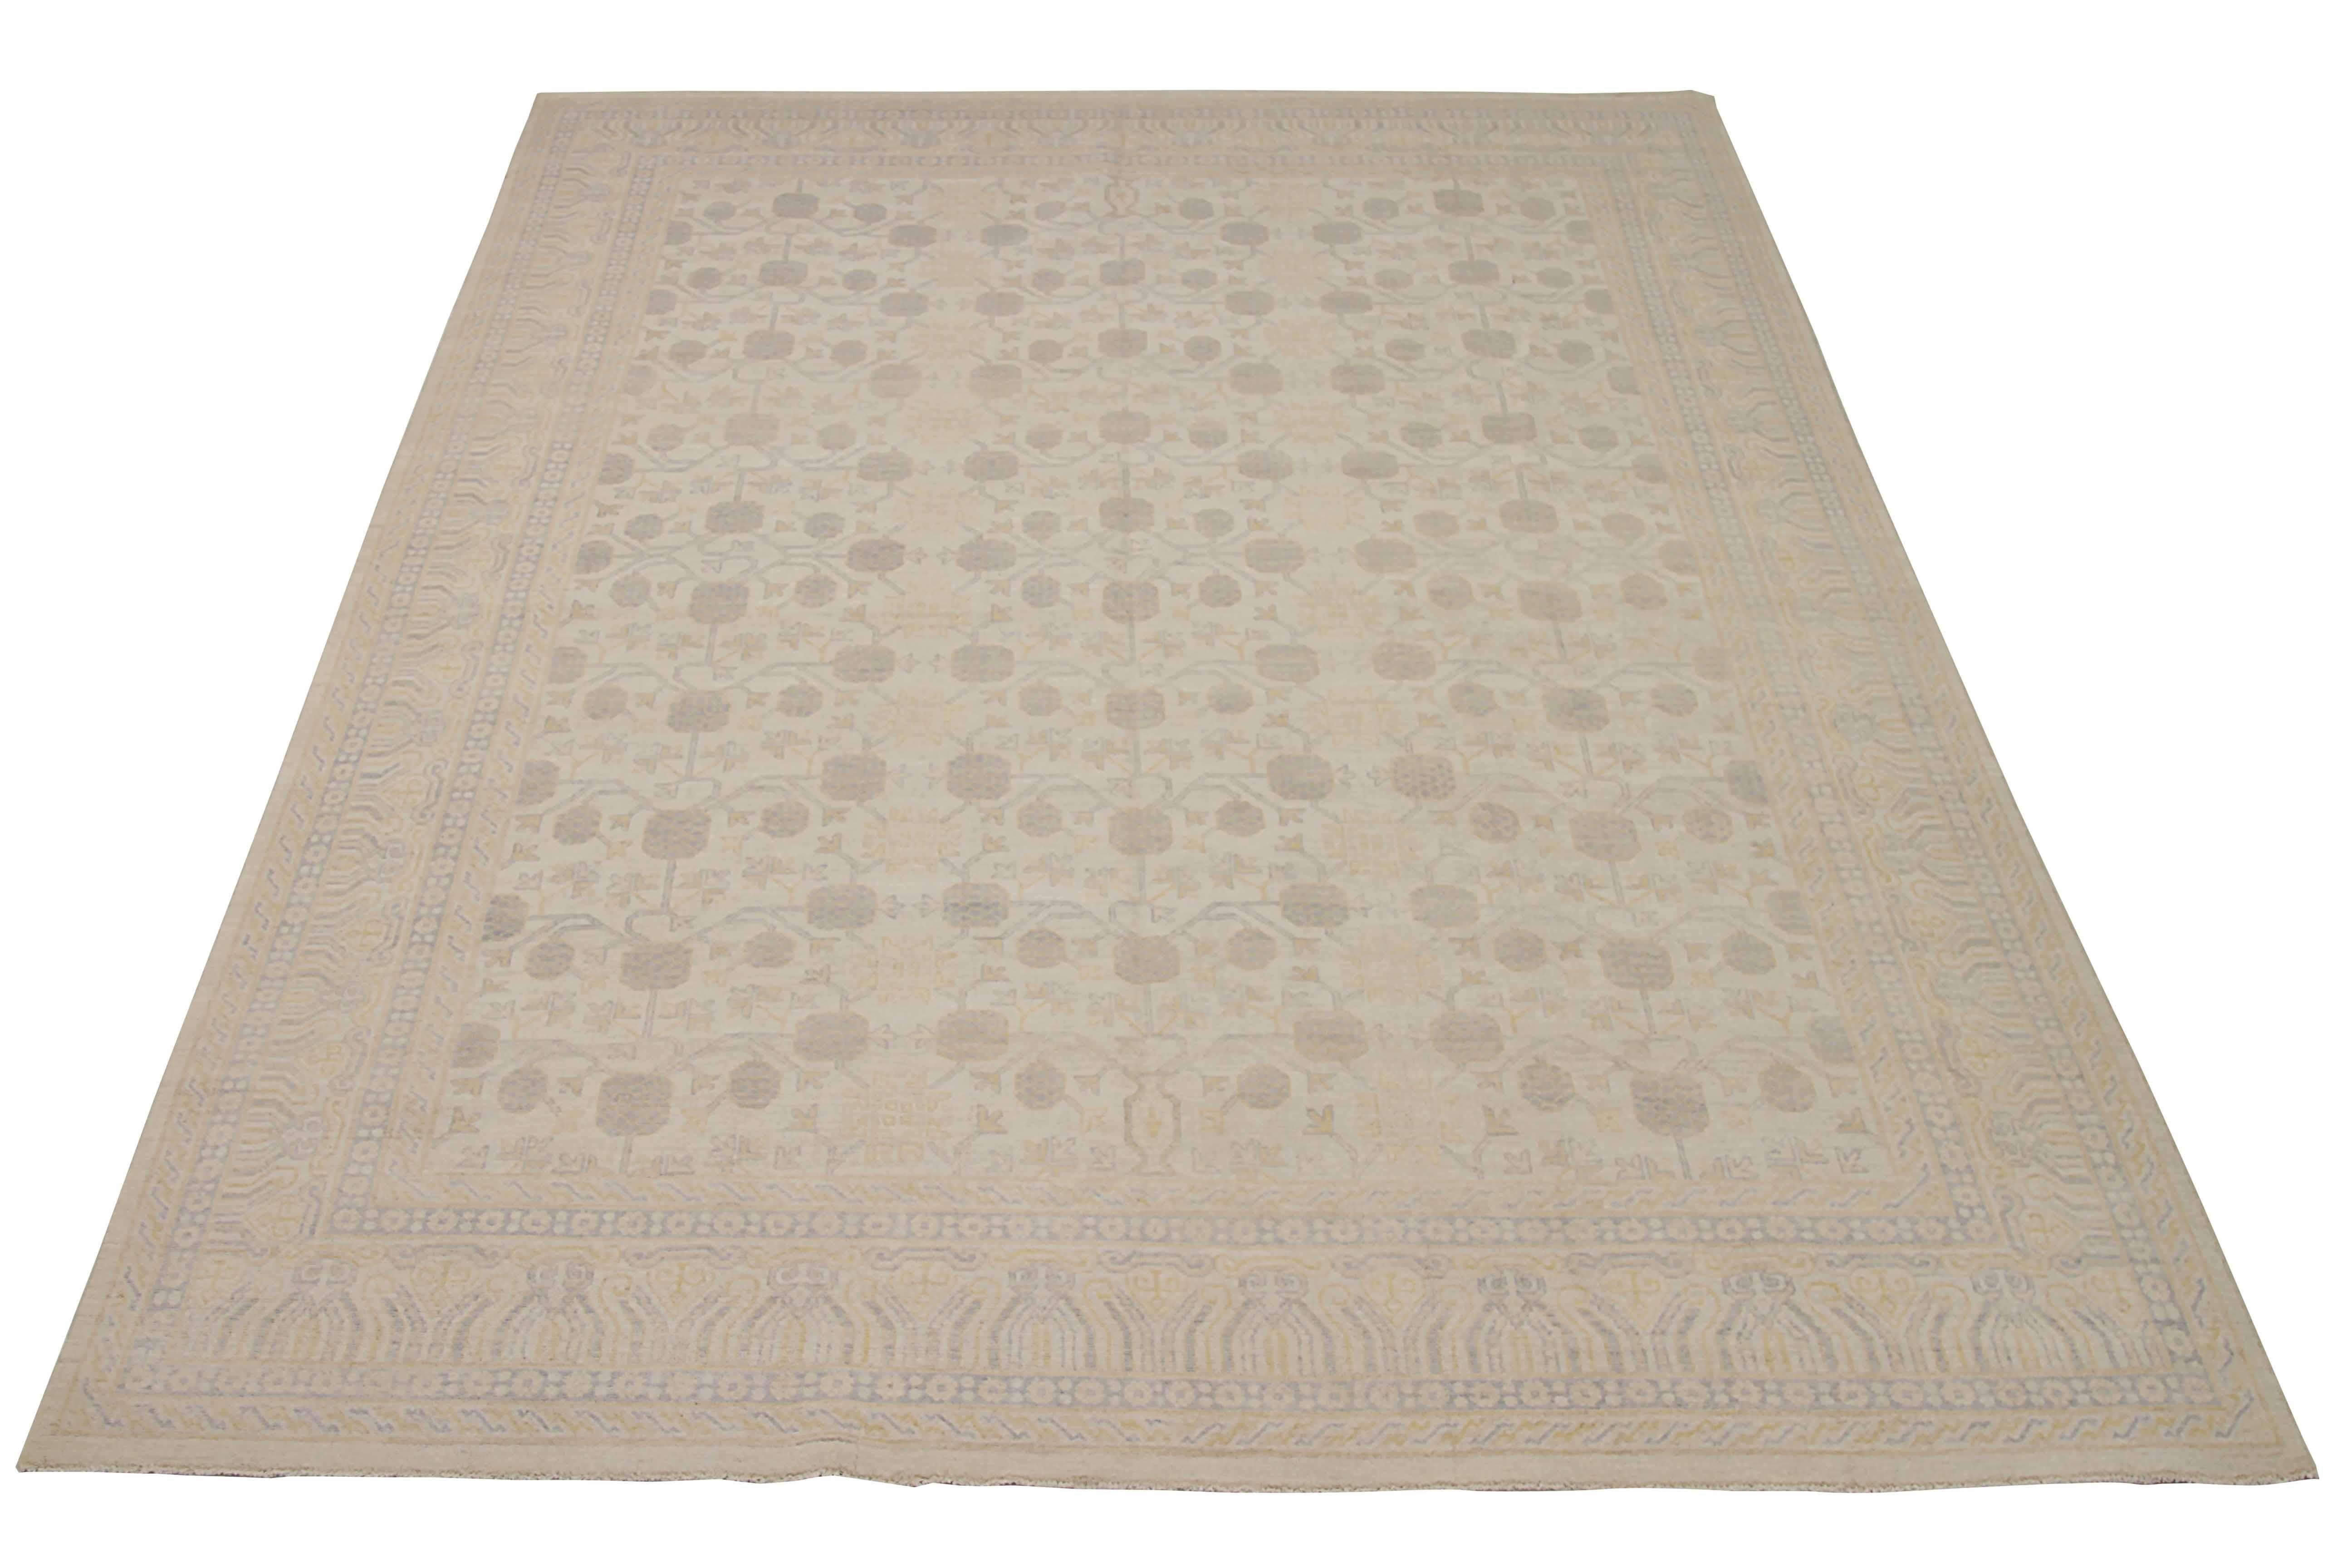 Neuer afghanischer Teppich, handgewebt aus feinster Schafswolle. Es ist mit natürlichen pflanzlichen Farbstoffen gefärbt, die für Menschen und Haustiere sicher sind. Es handelt sich um ein traditionelles Khotan-Design, das von erfahrenen